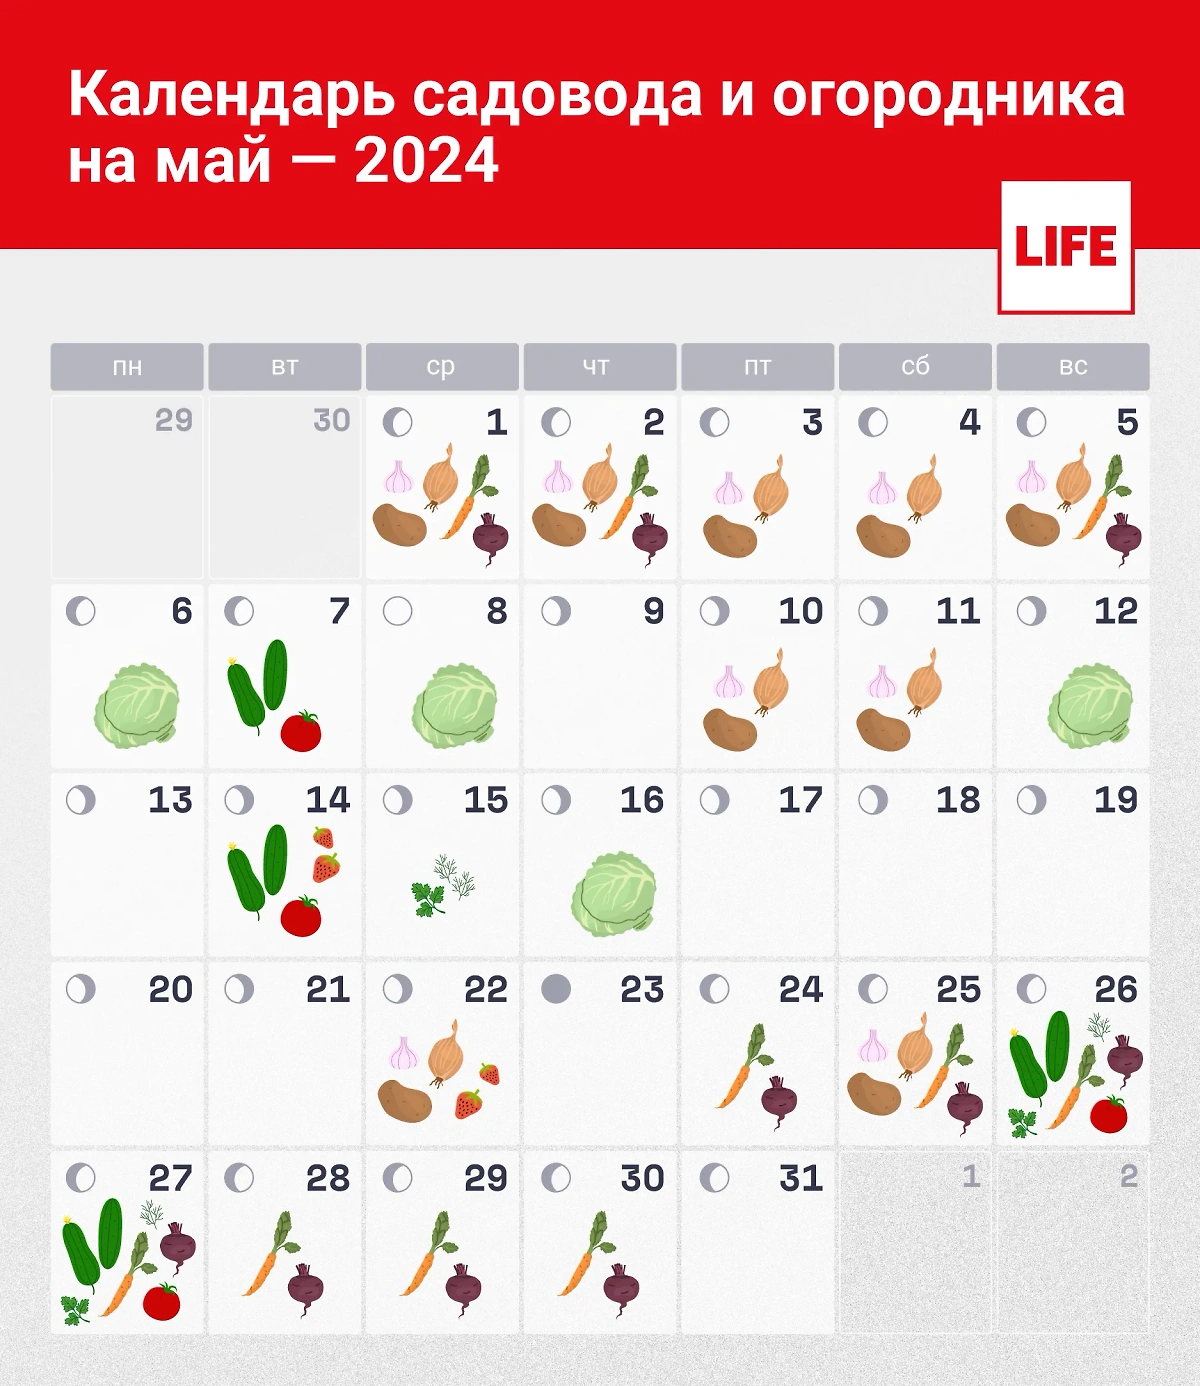 Календарь садовода и огородника на май. Инфографика © Life.ru 